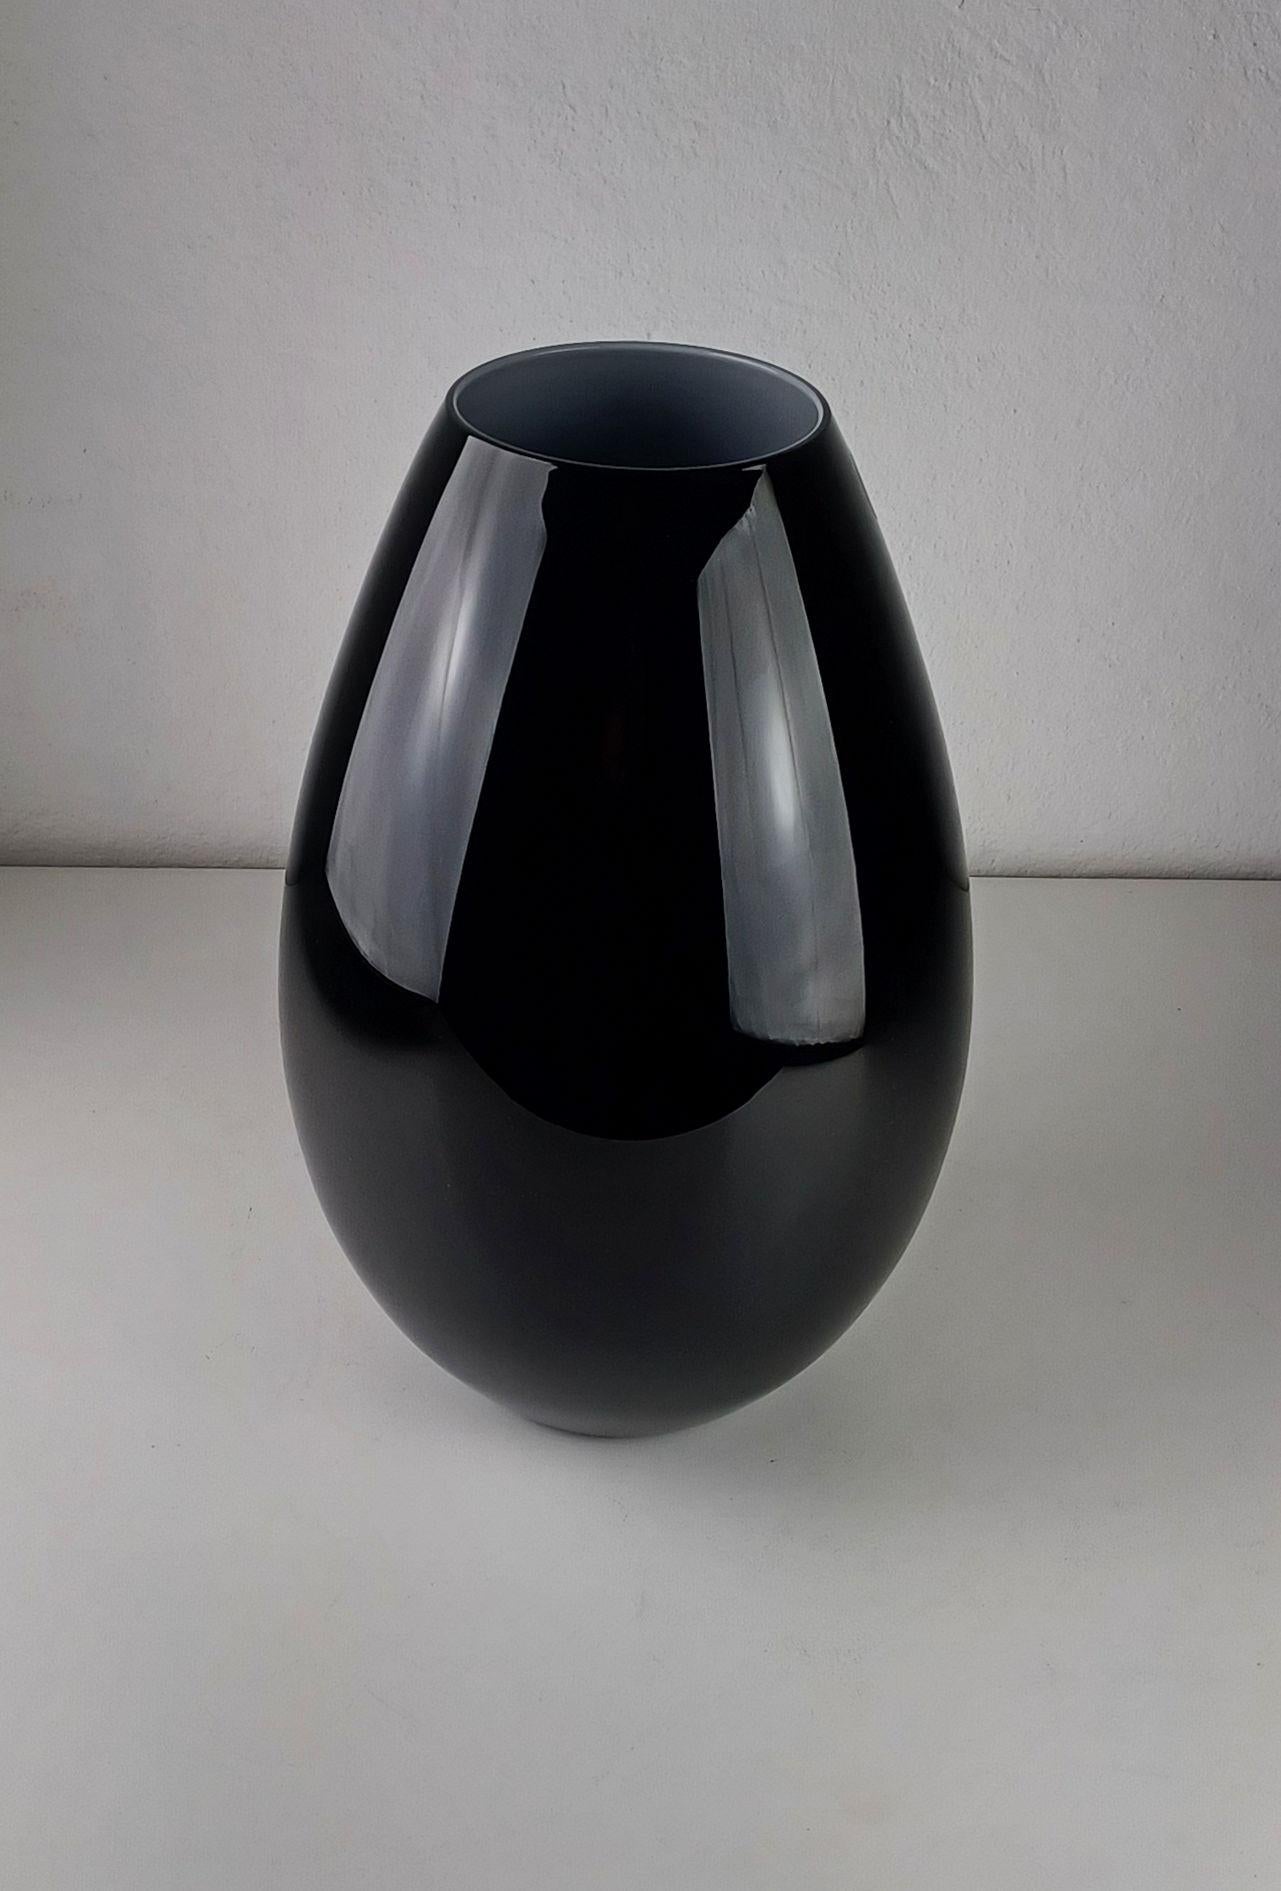 Vase en verre opalin danois des années 2000 par Peters Svarrer pour Holmegaard

Ce grand vase en verre opalin noir et blanc soufflé à la bouche a été conçu au début du 21e siècle et fait partie d'une grande série de vases, de bols et de lampes de